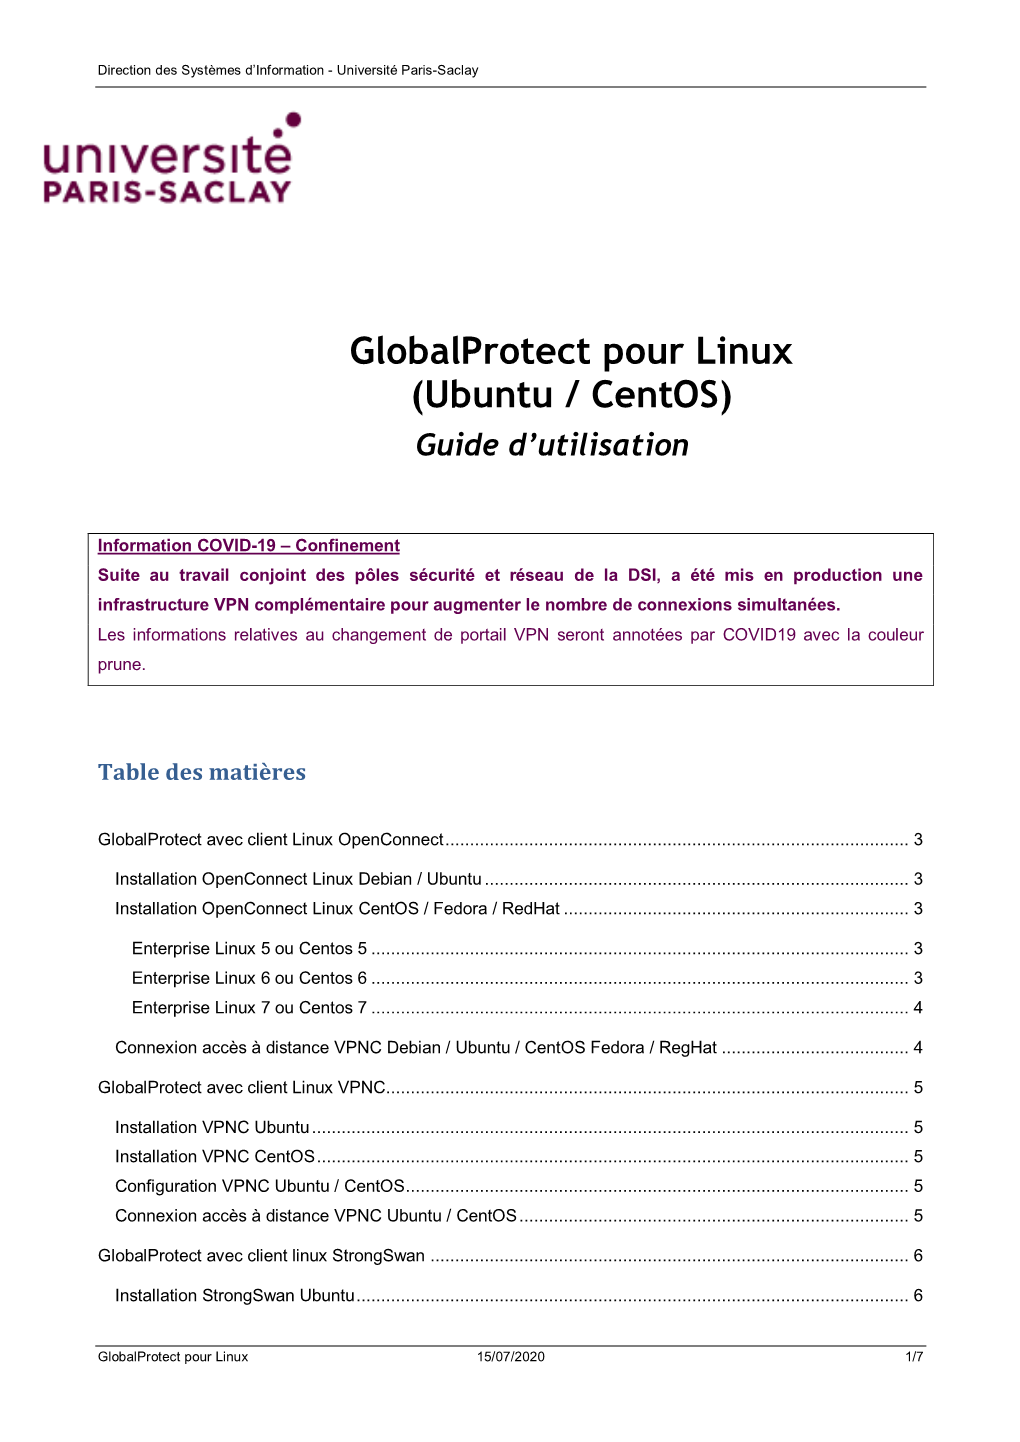 Globalprotect Pour Linux (Ubuntu / Centos) Guide D’Utilisation